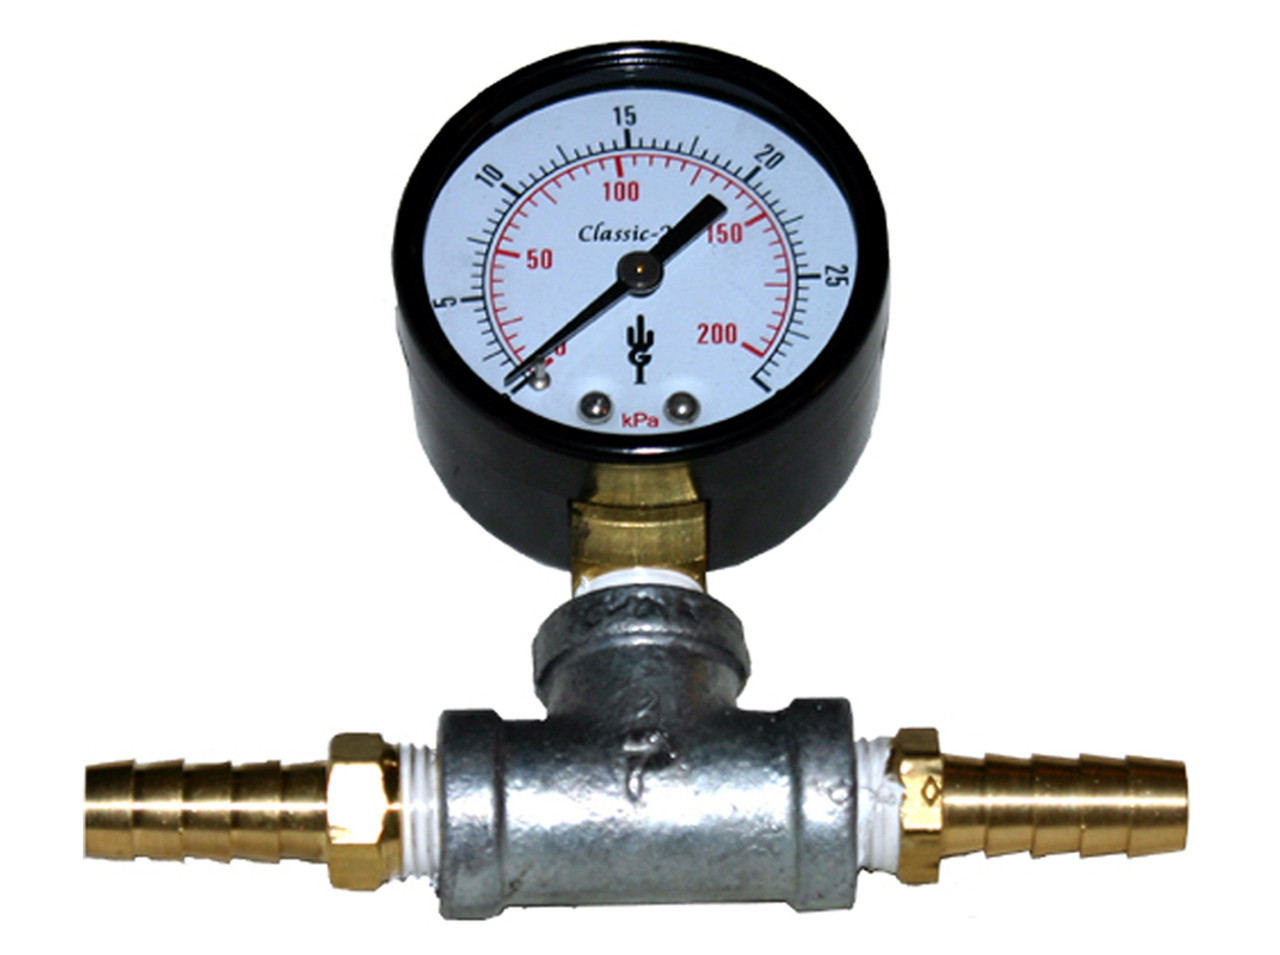 1/2" Outdoor Water Solutions In-Line Pressure Gauge